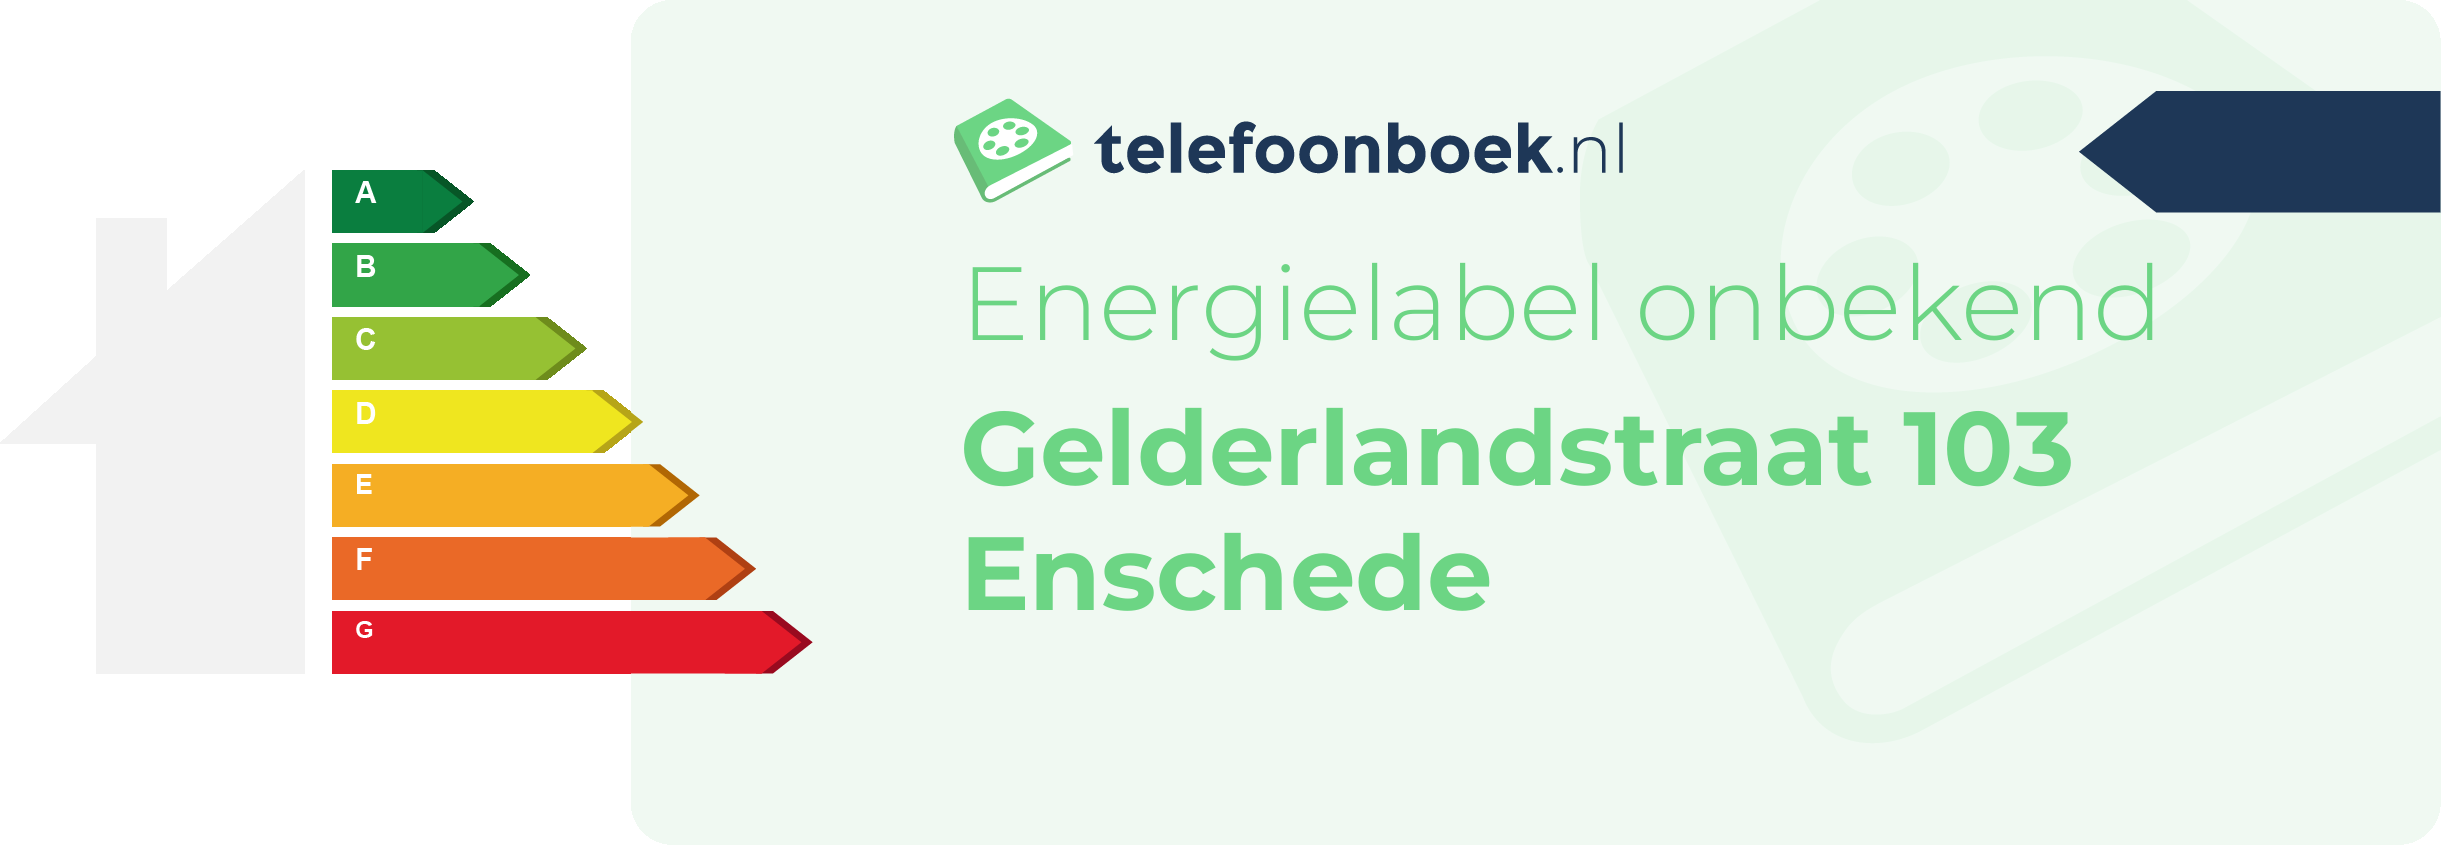 Energielabel Gelderlandstraat 103 Enschede